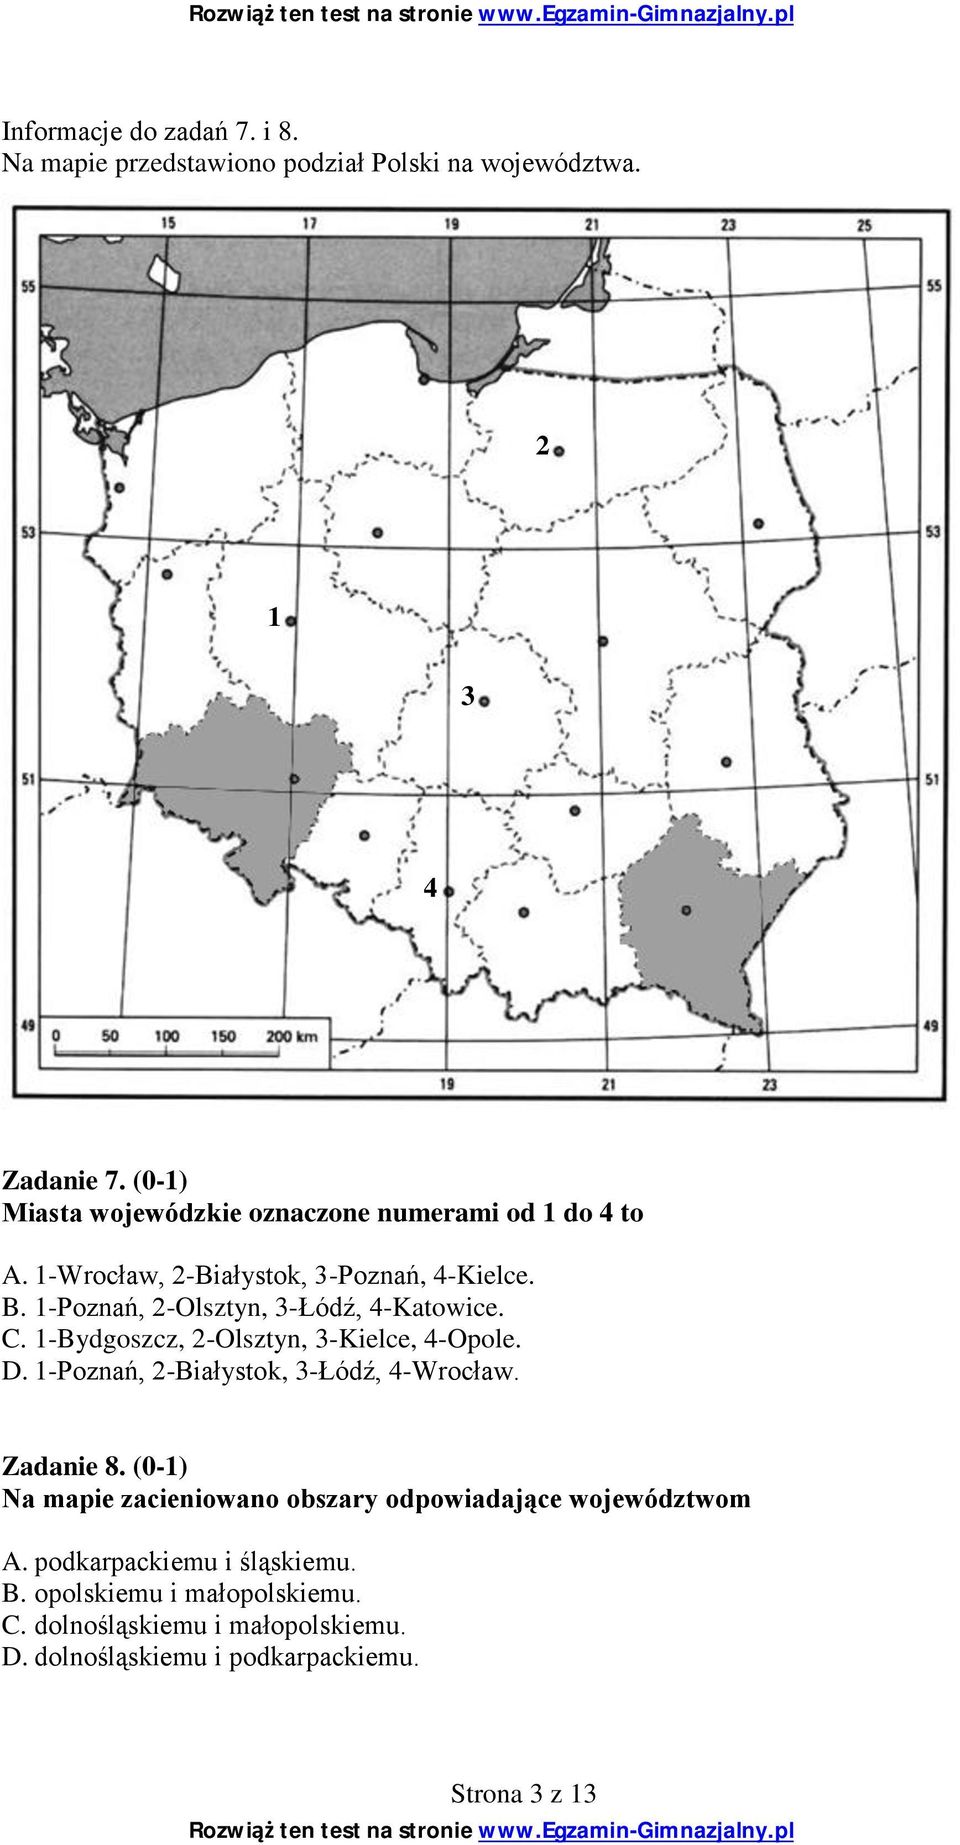 1-Poznań, 2-Olsztyn, 3-Łódź, 4-Katowice. C. 1-Bydgoszcz, 2-Olsztyn, 3-Kielce, 4-Opole. D. 1-Poznań, 2-Białystok, 3-Łódź, 4-Wrocław.